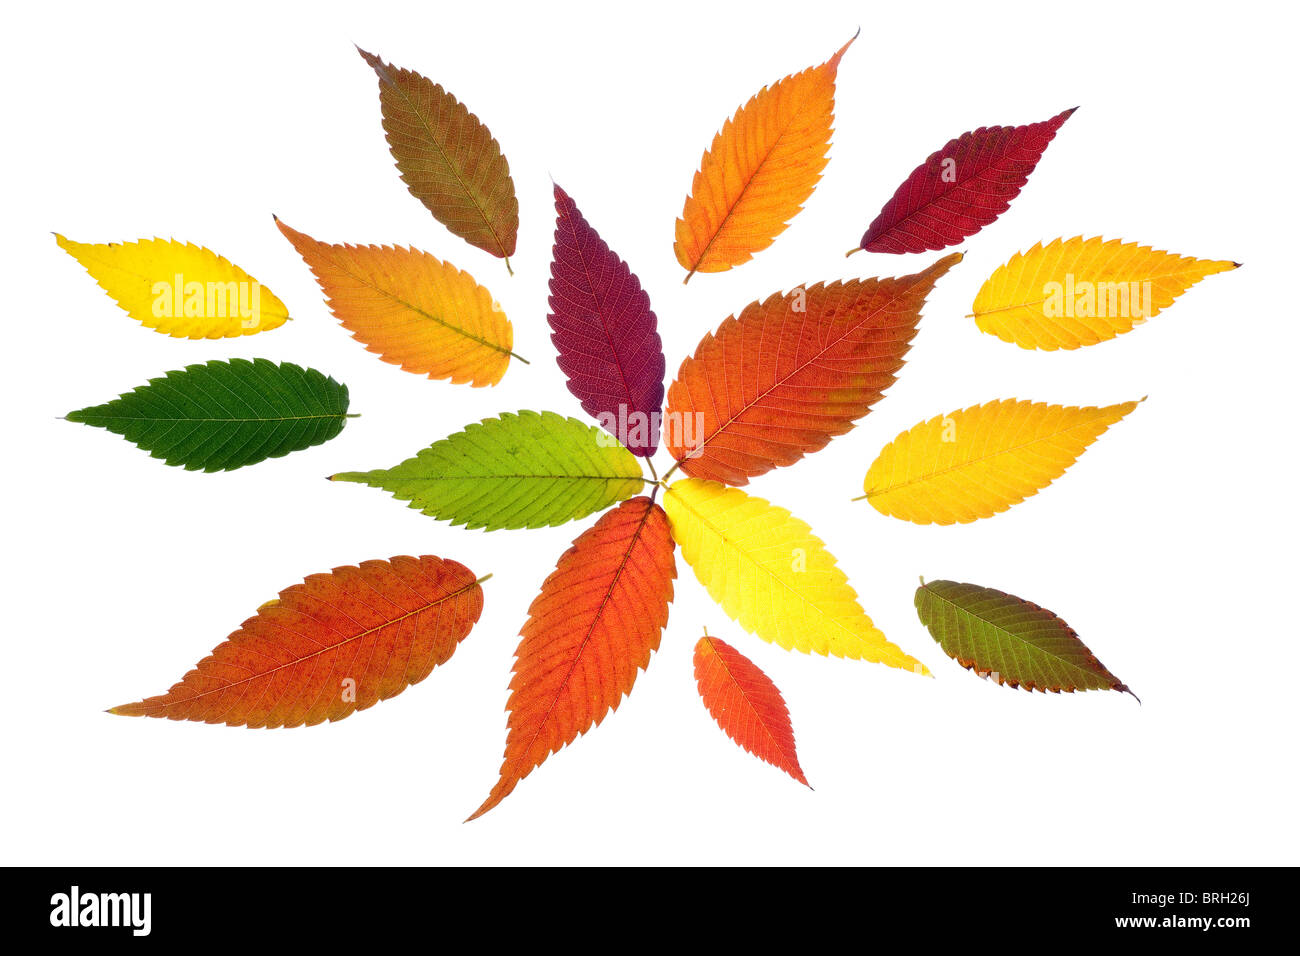 Vif et coloré les feuilles d'automne isolé sur fond blanc Banque D'Images